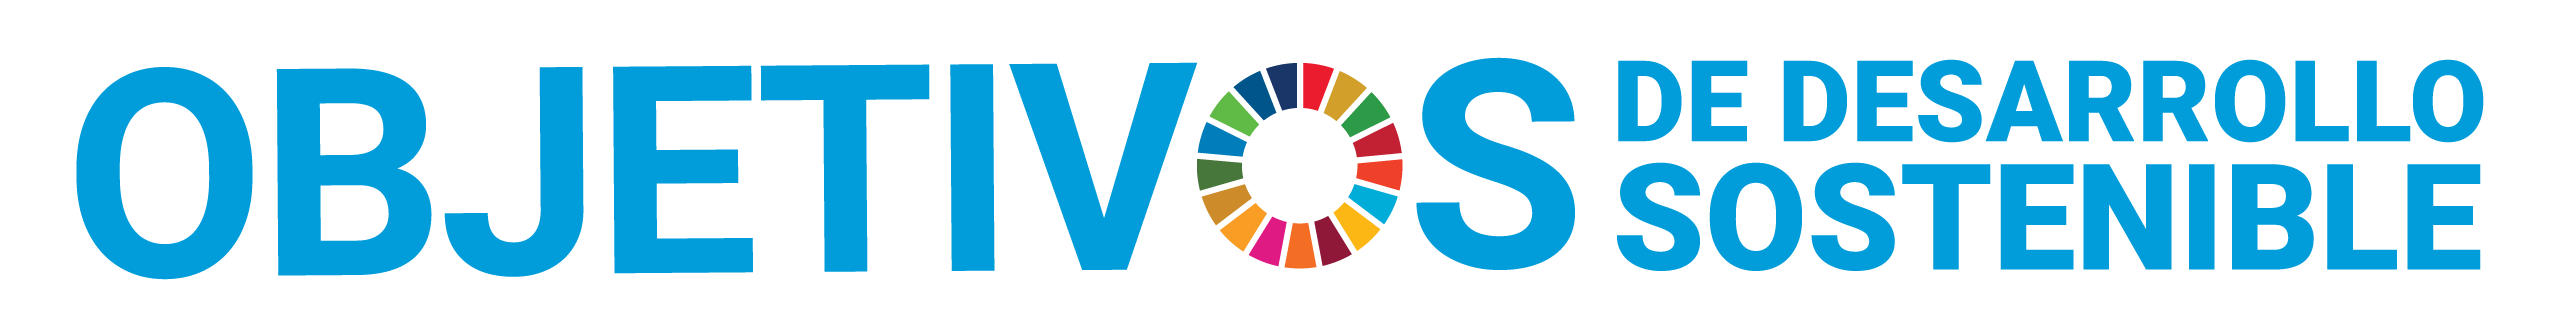 plan-international-y-los-objetivos-de-desarrollo-sostenible